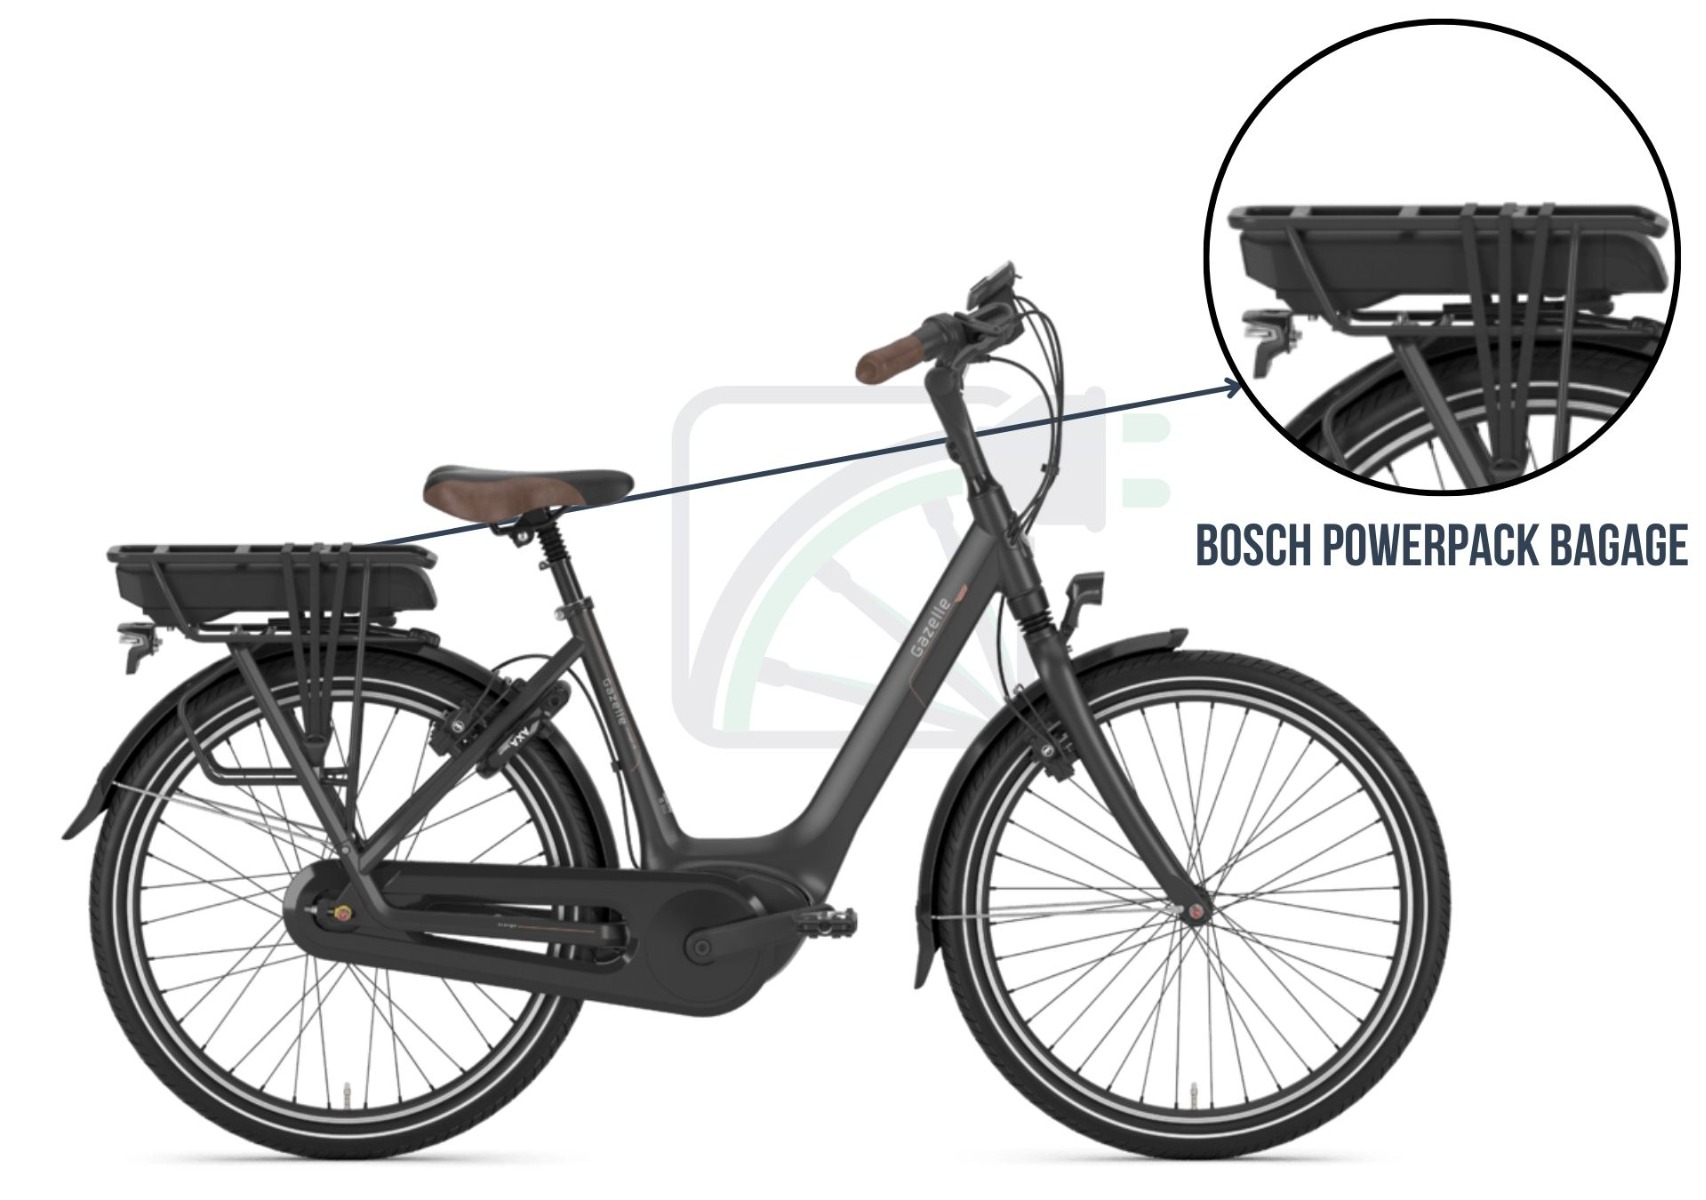 På dette billede ser du en elektrisk cykel. Billedet fremhæver batteriet og beskriver, hvilke batterier der passer til denne type cykel. I dette tilfælde er det Bosch PowerPack bagagebærer.